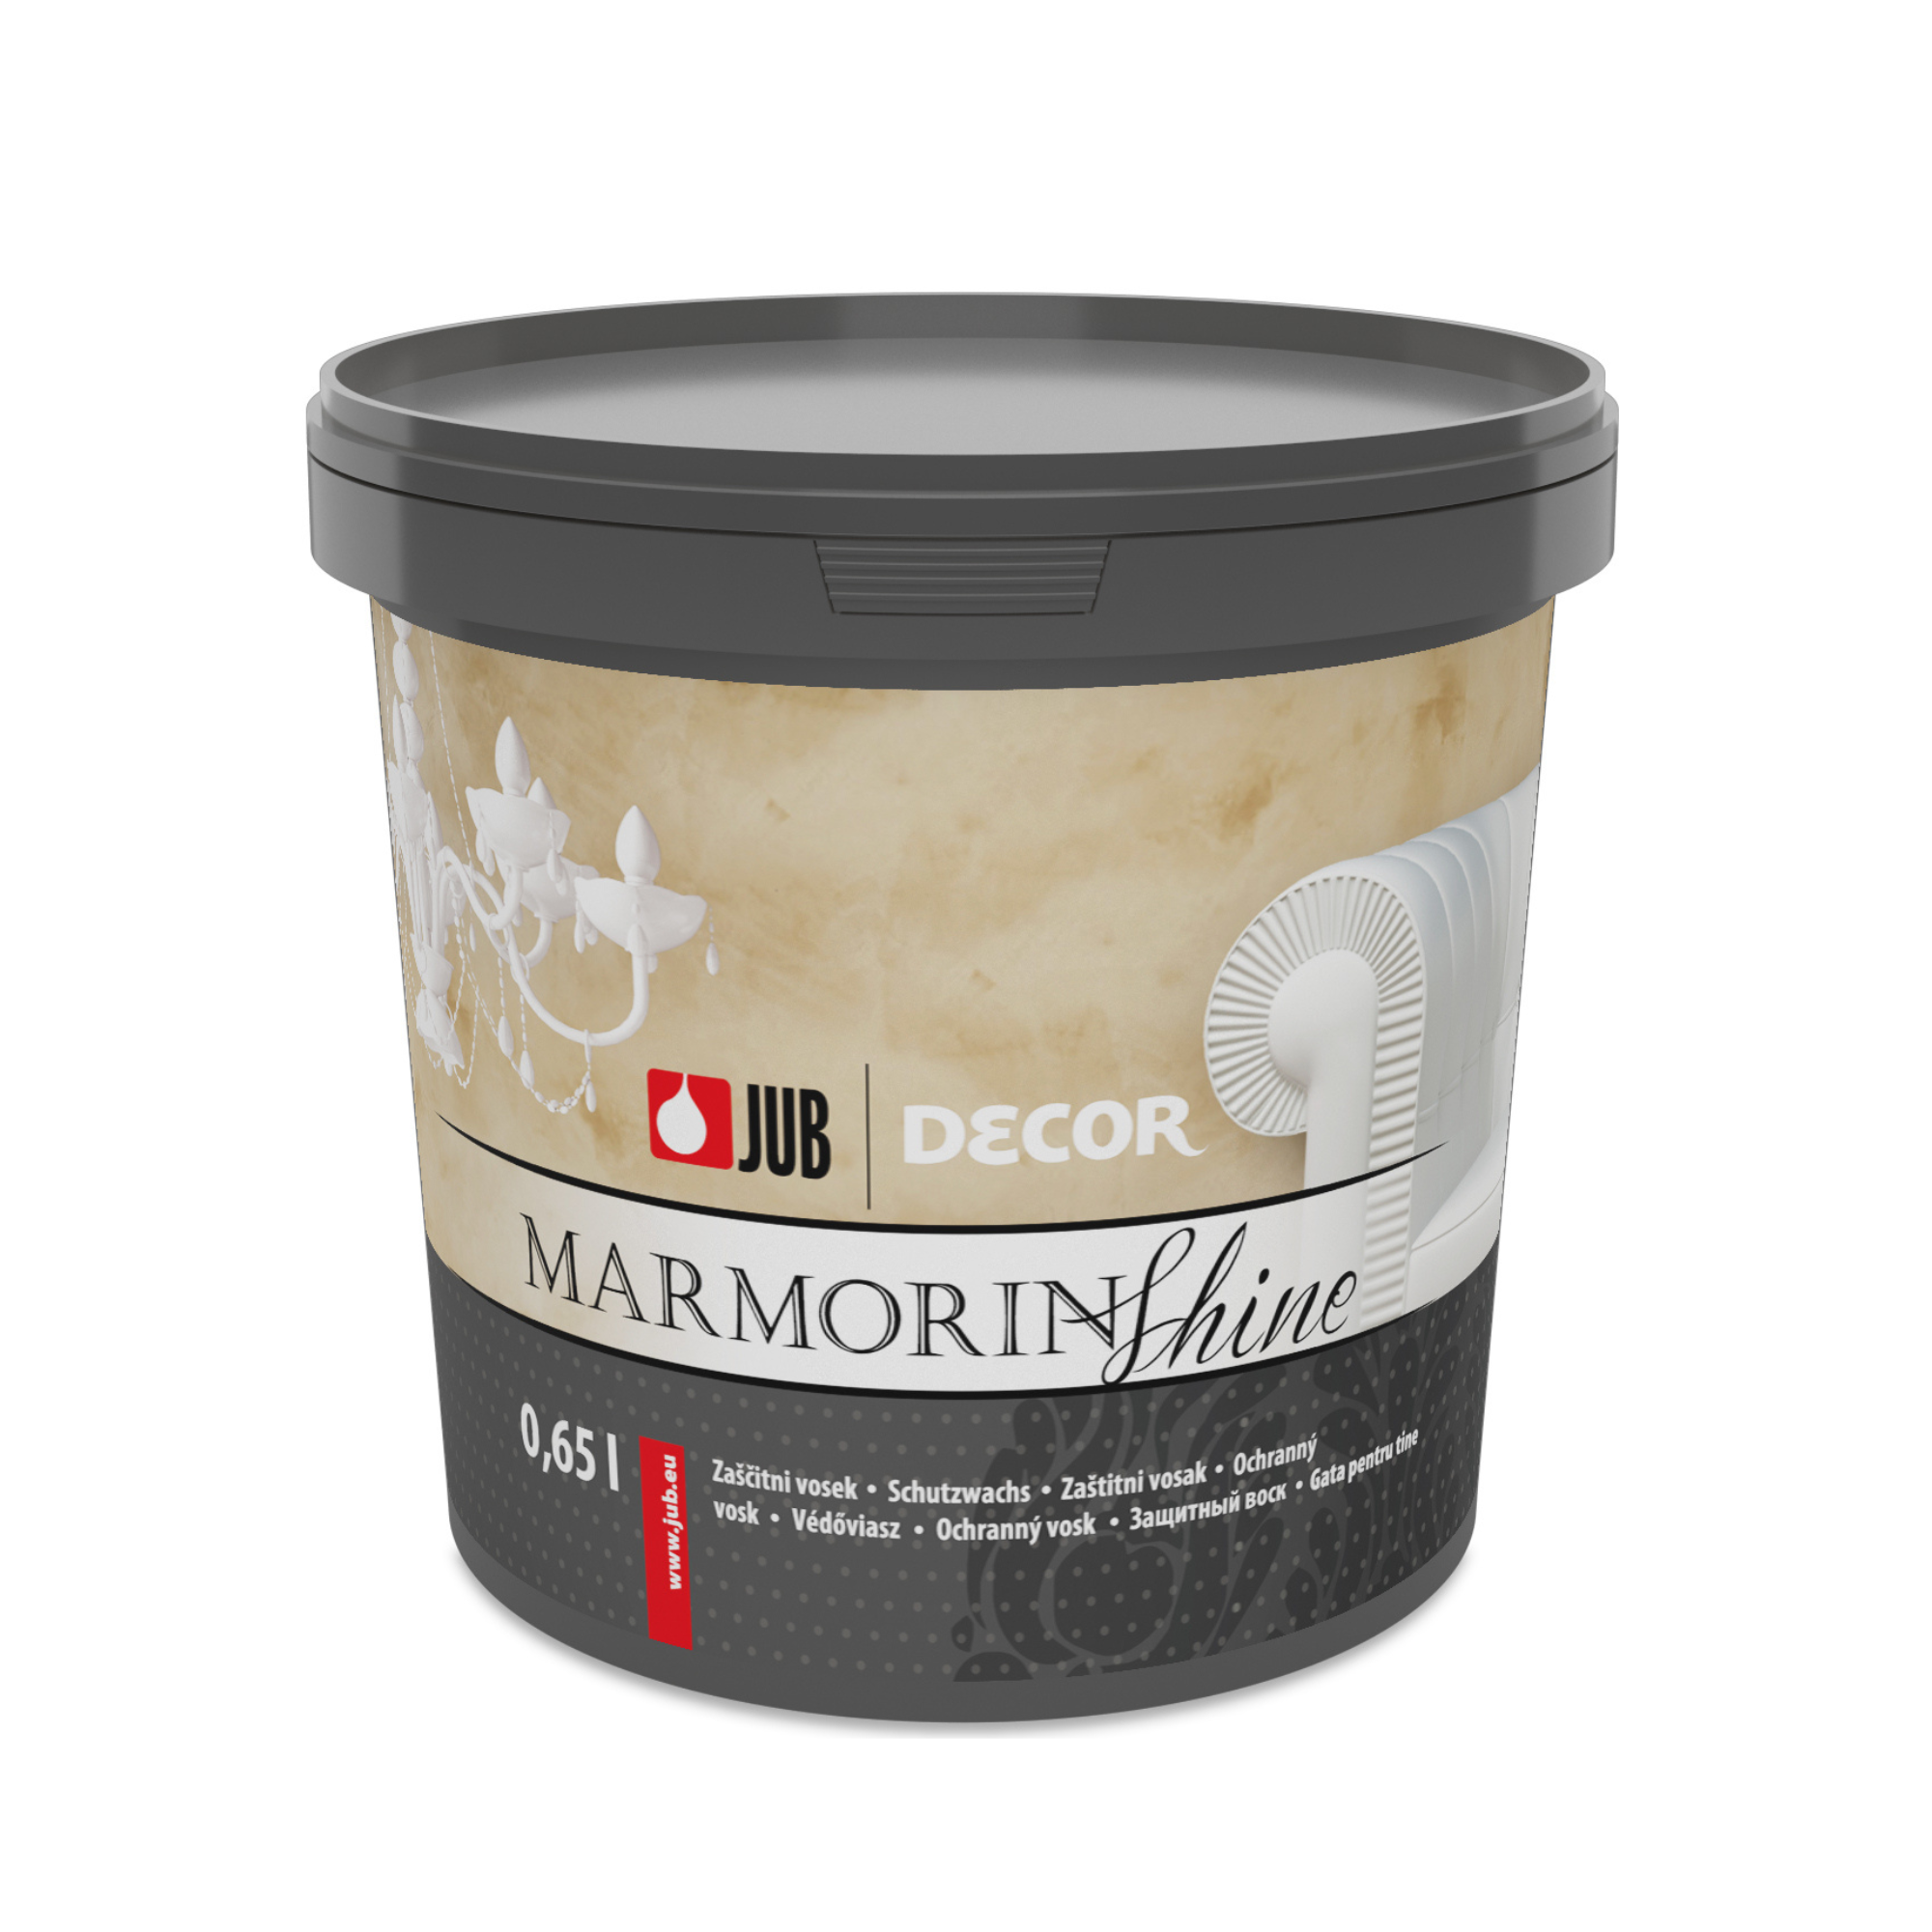 JUB DECOR Marmorin shine ochranný vosk 0,65 l